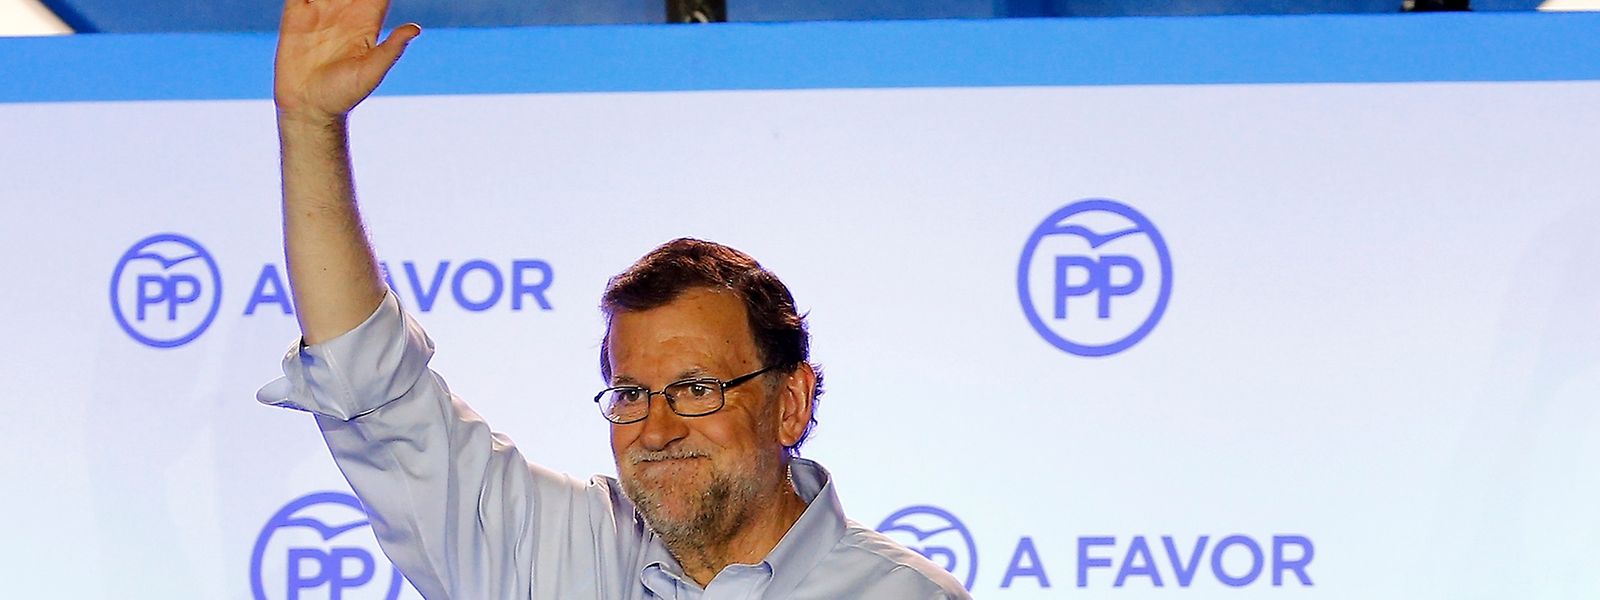 Mariano Rajoy tritt nach dem Wahlsieg seiner konservativen Volkspartei (PP) vor die Presse.